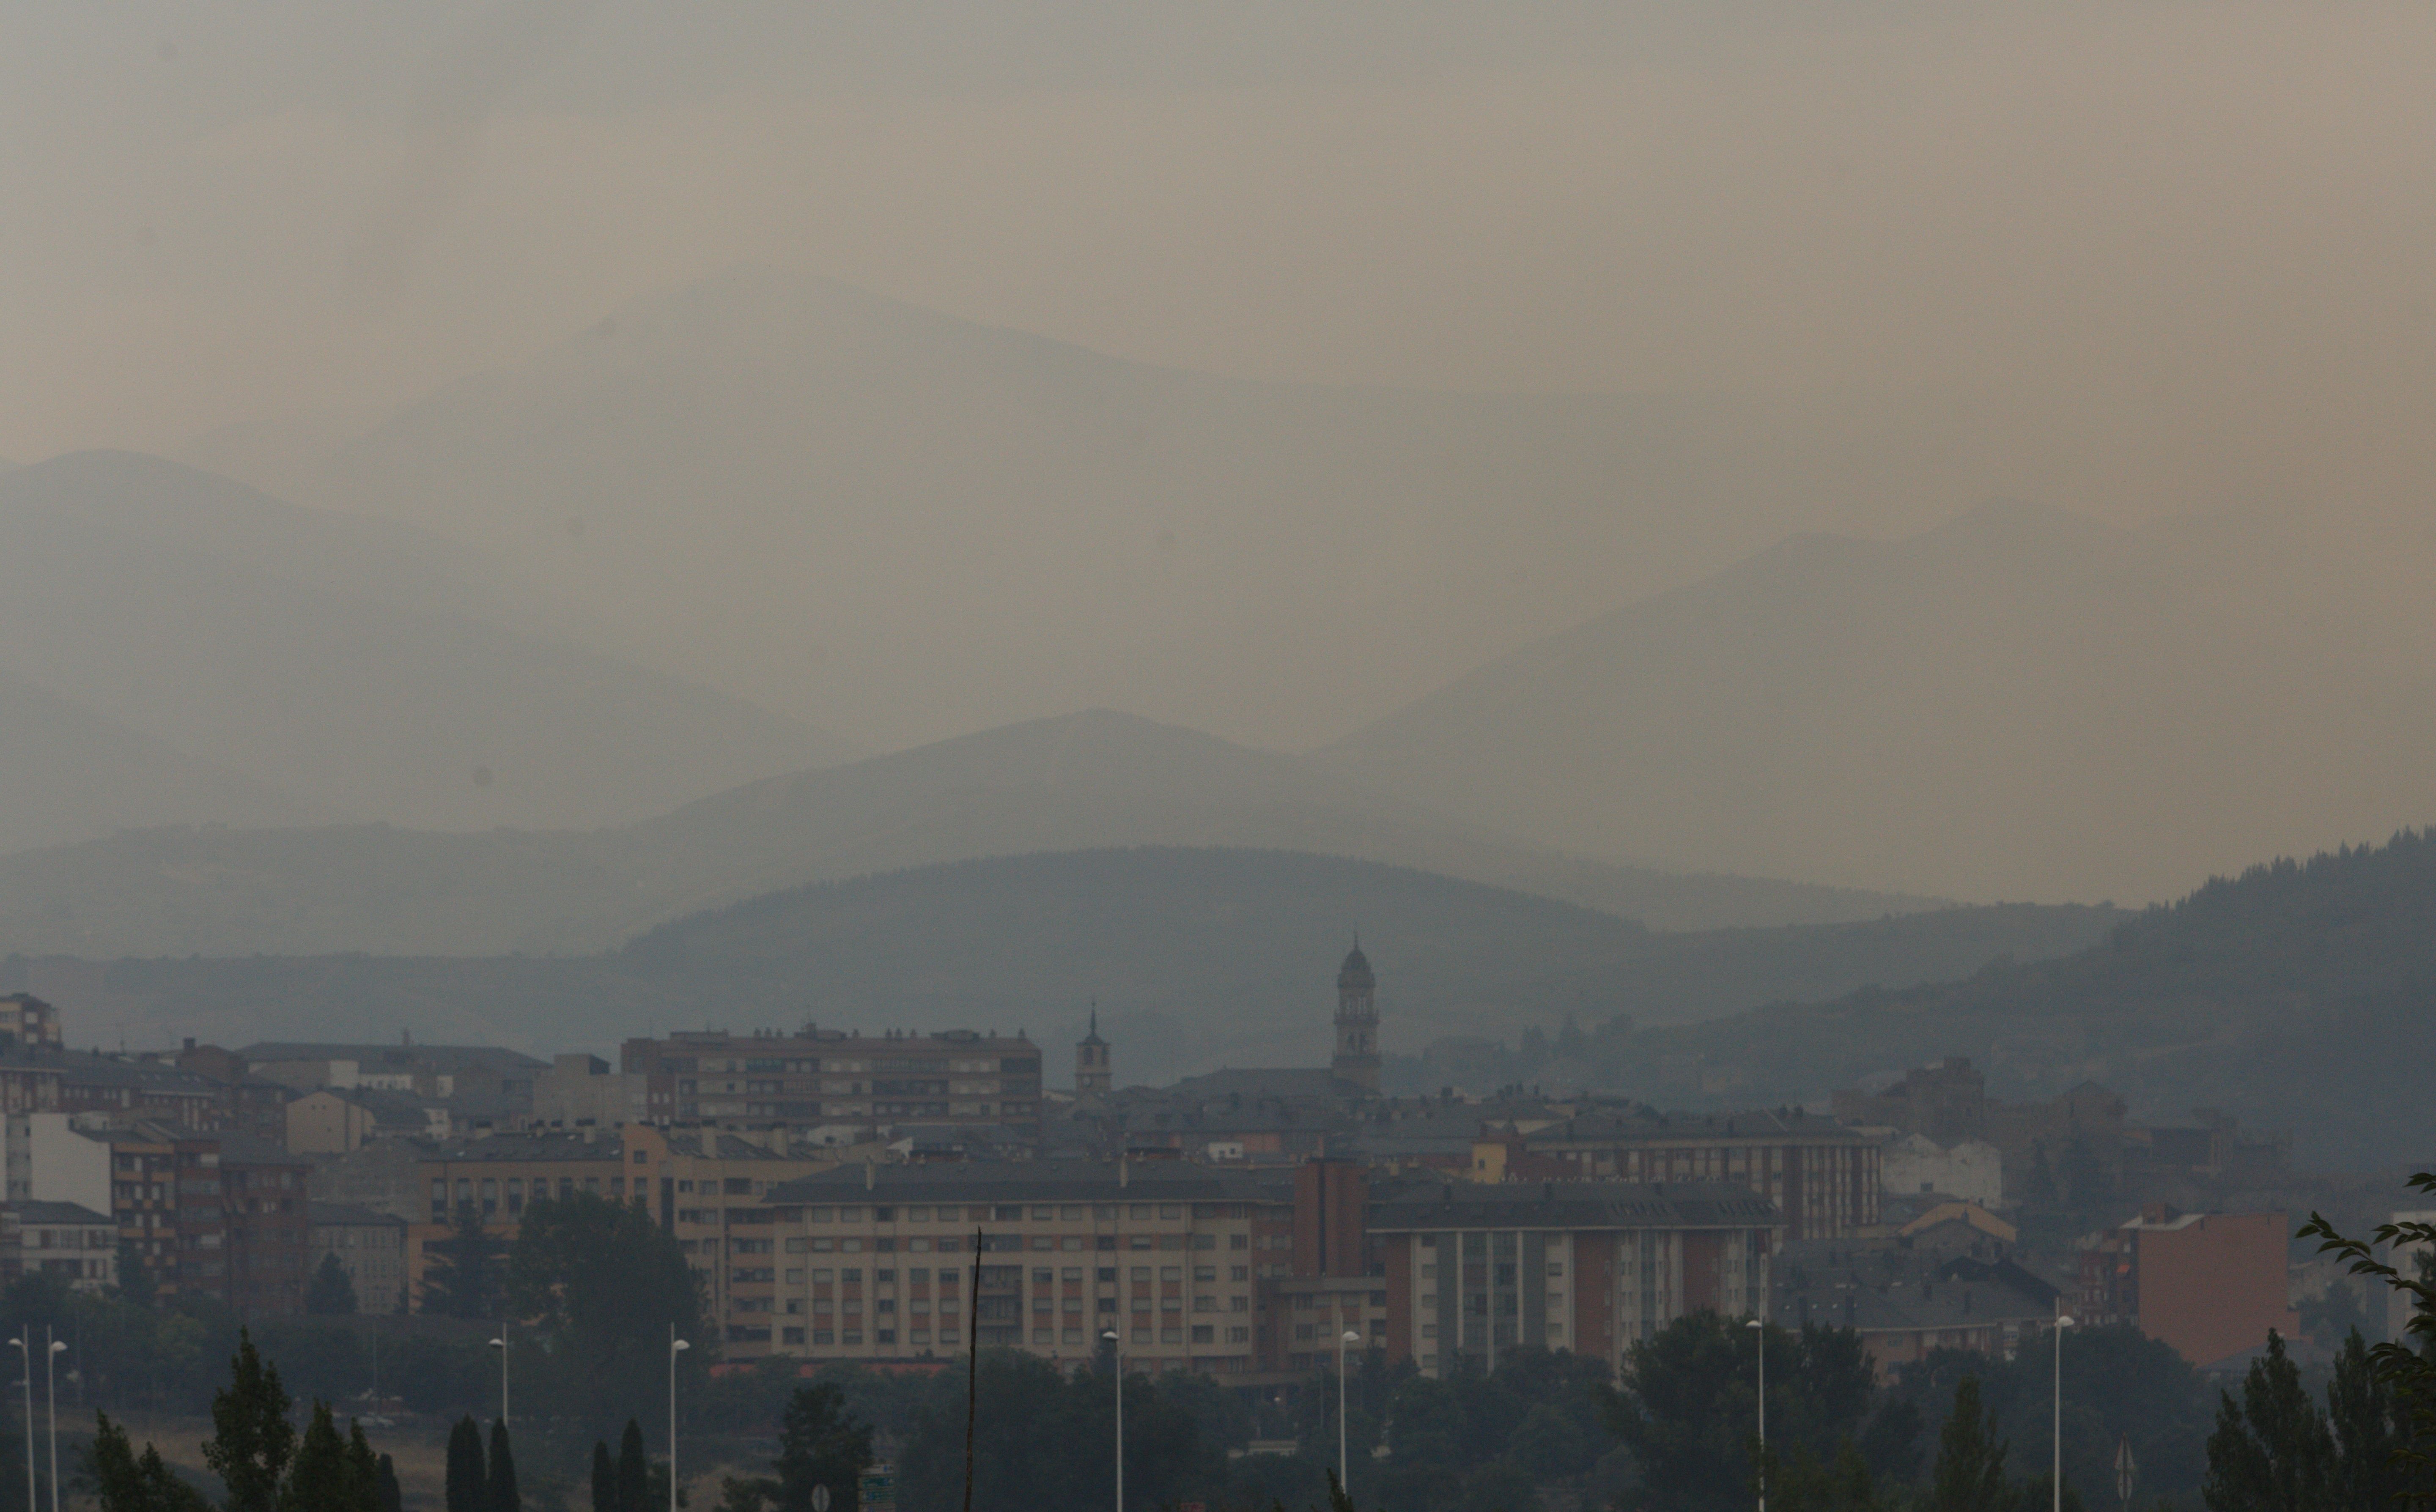 La ciudad de Ponferrada cubierta de humo por los diferentes incendios que hay en la comarca del Bierzo